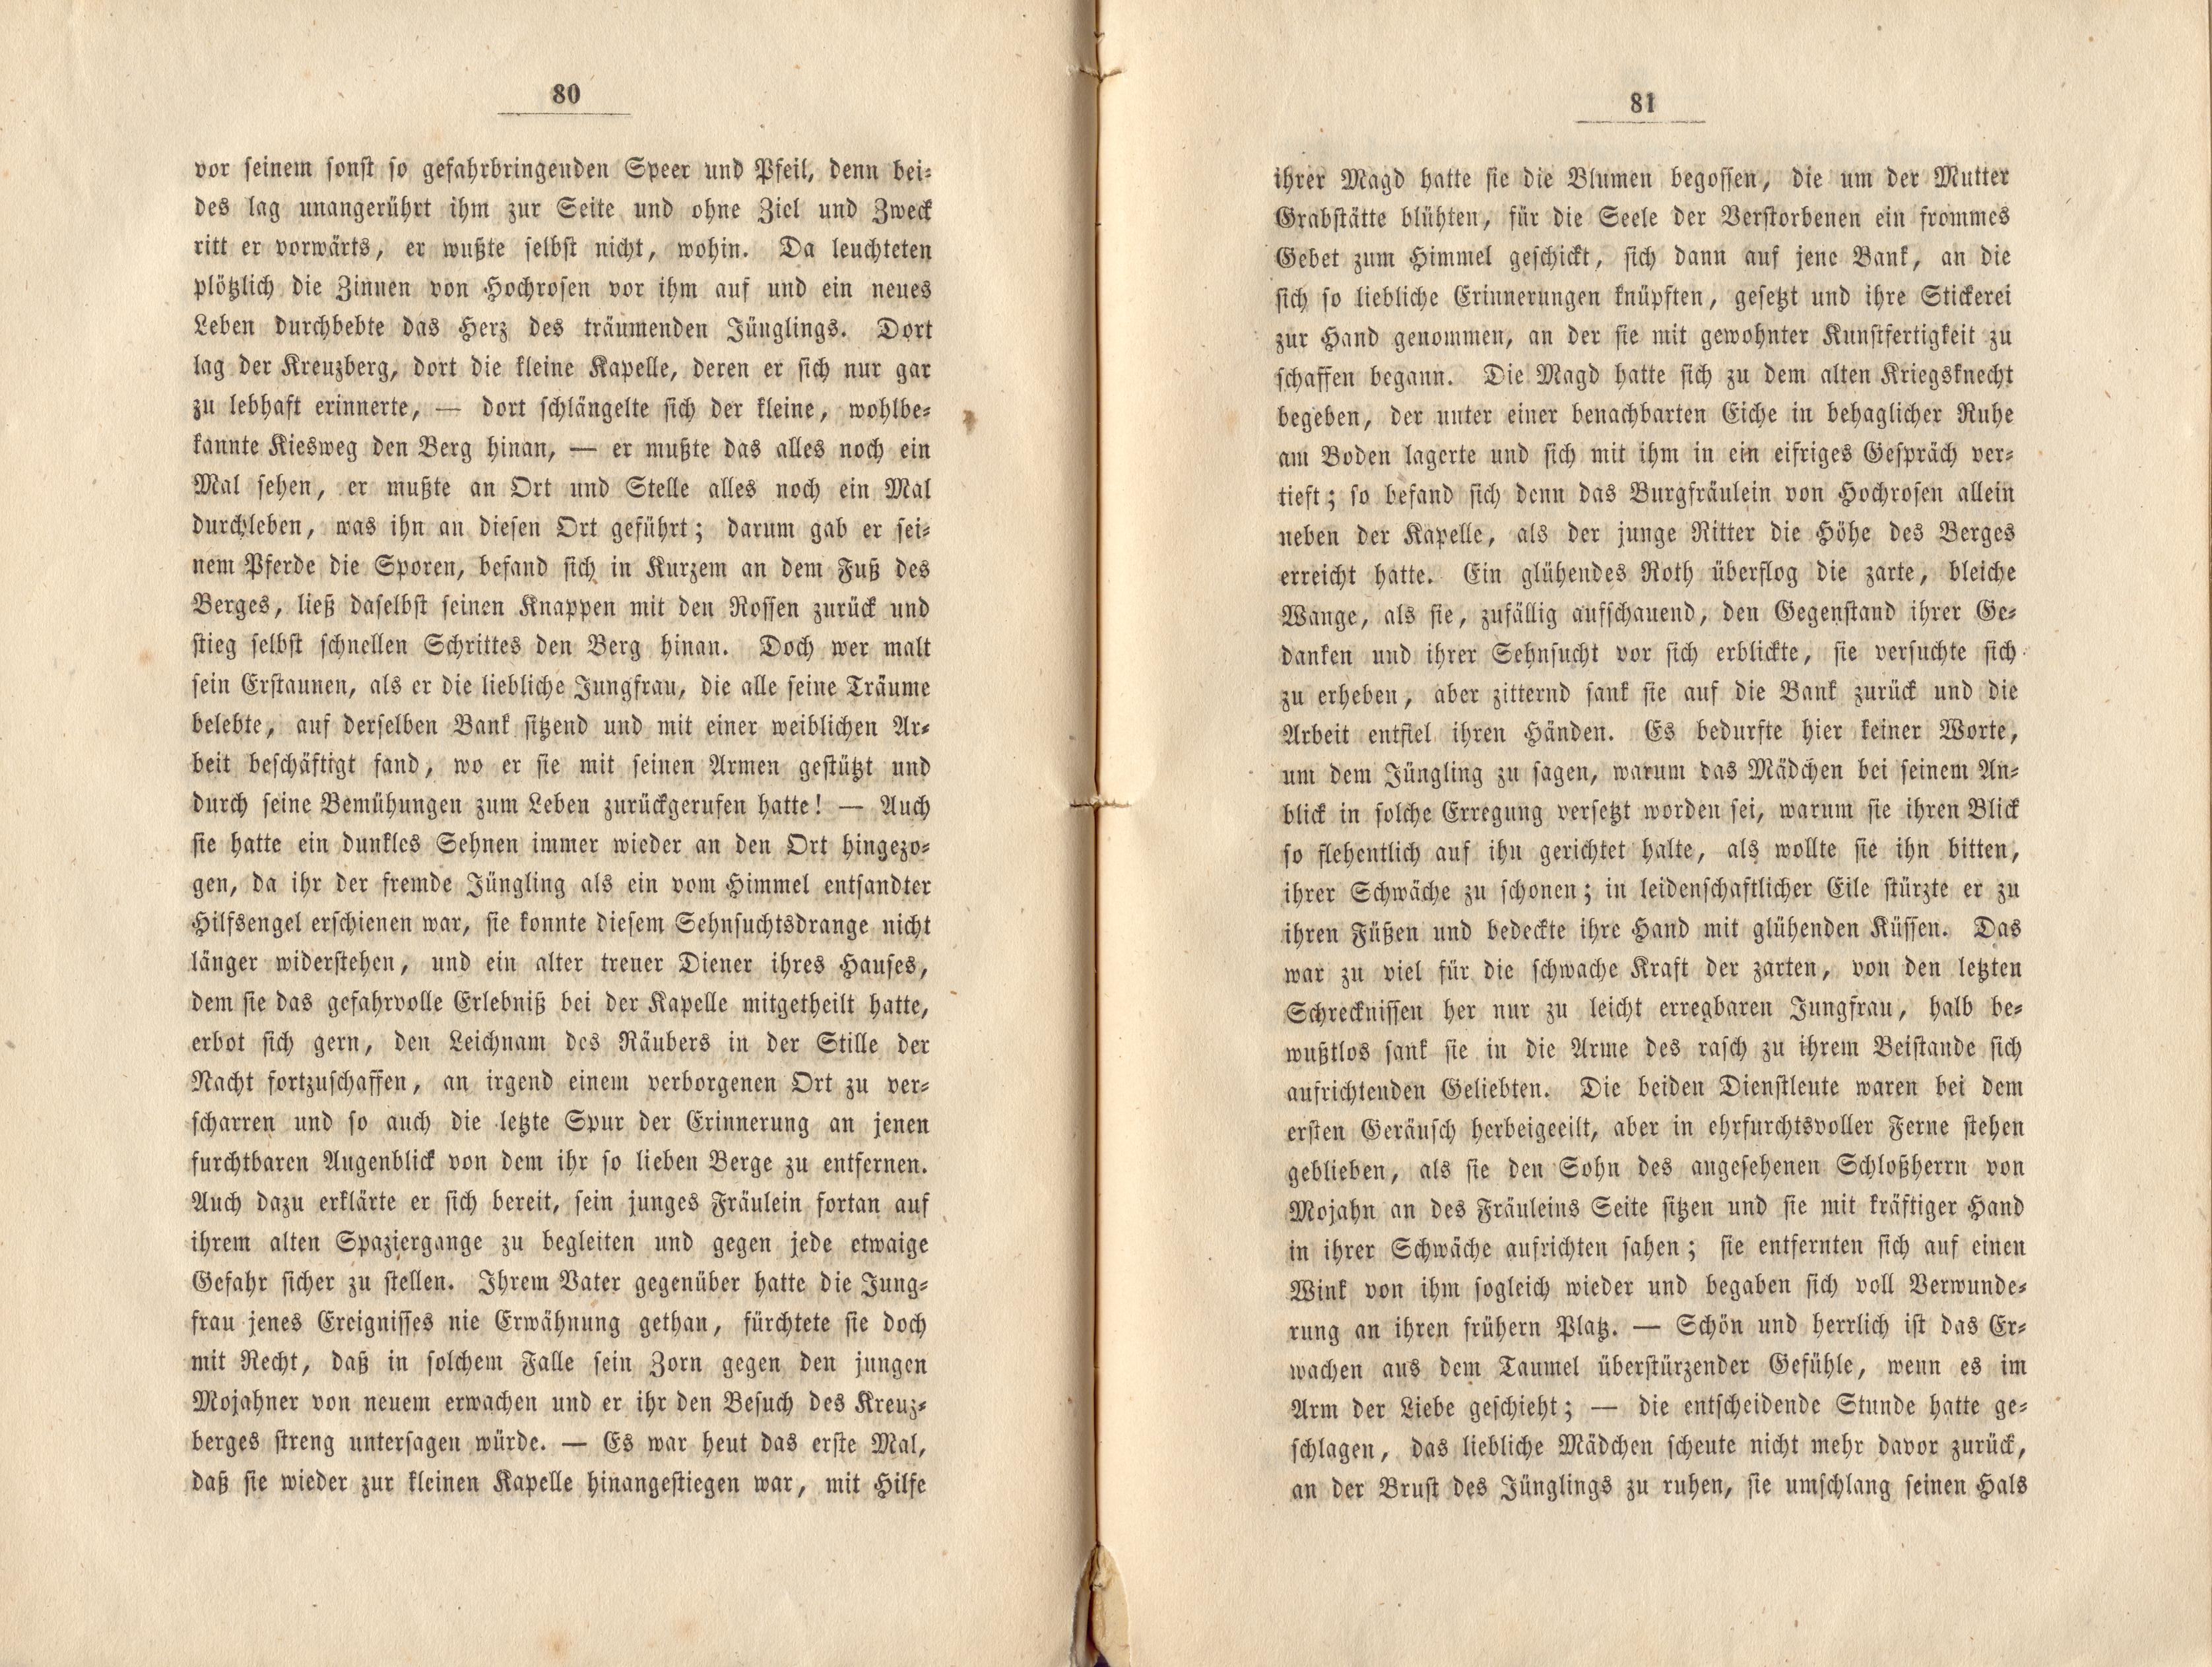 Felliner Blätter (1859) | 41. (80-81) Haupttext